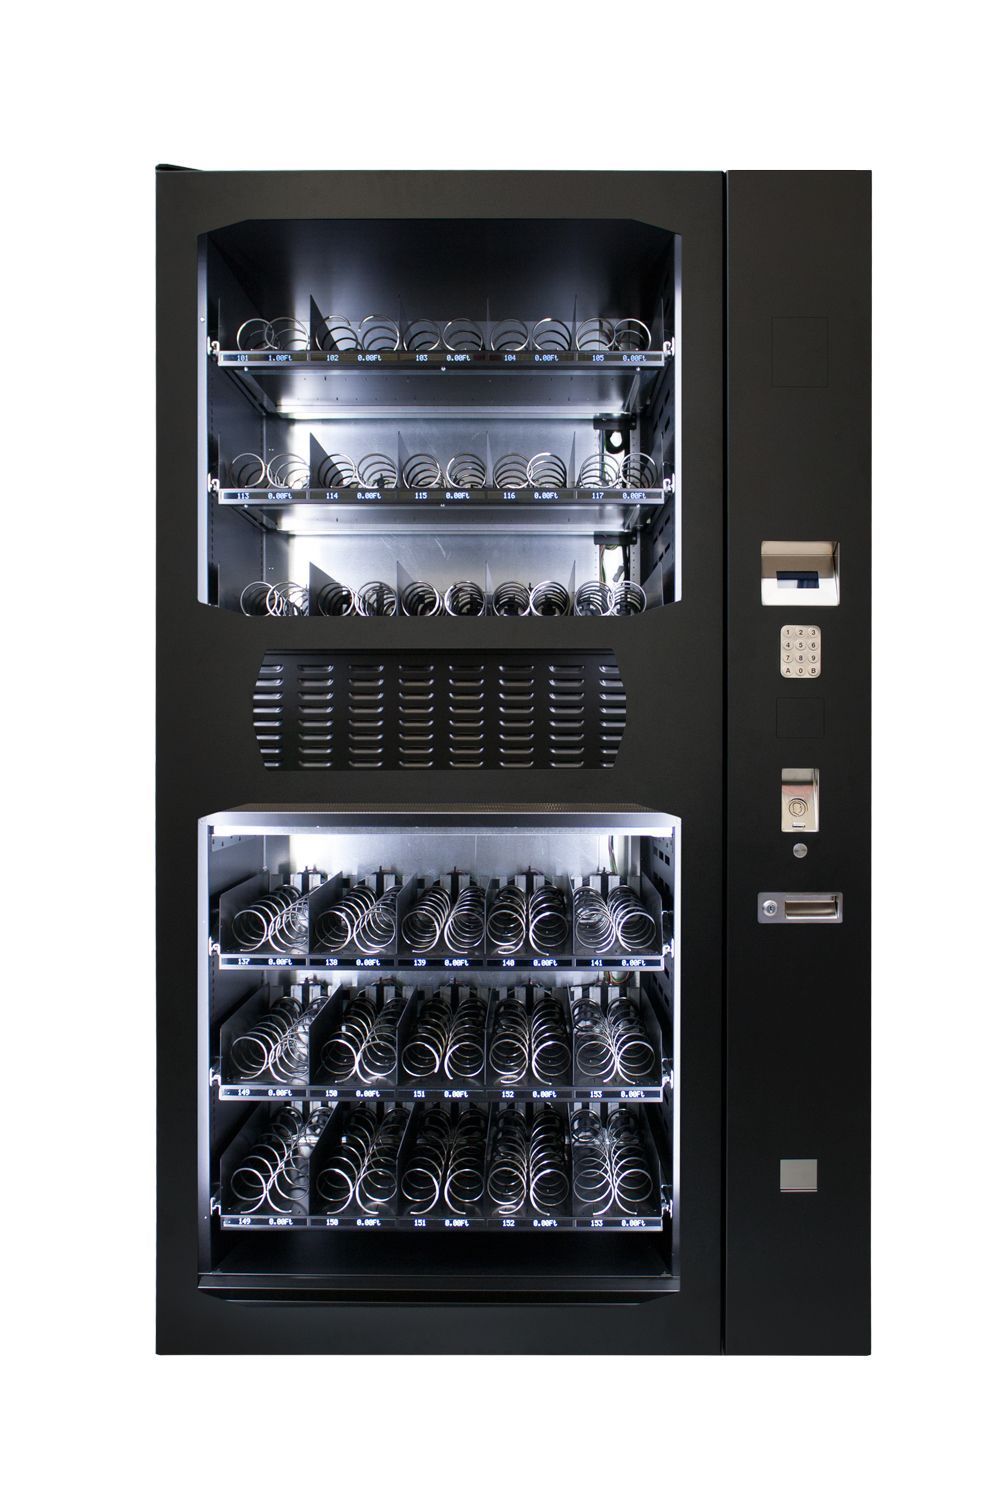 Distributeur automatique de snacking/boissons fraiches type ad10_0